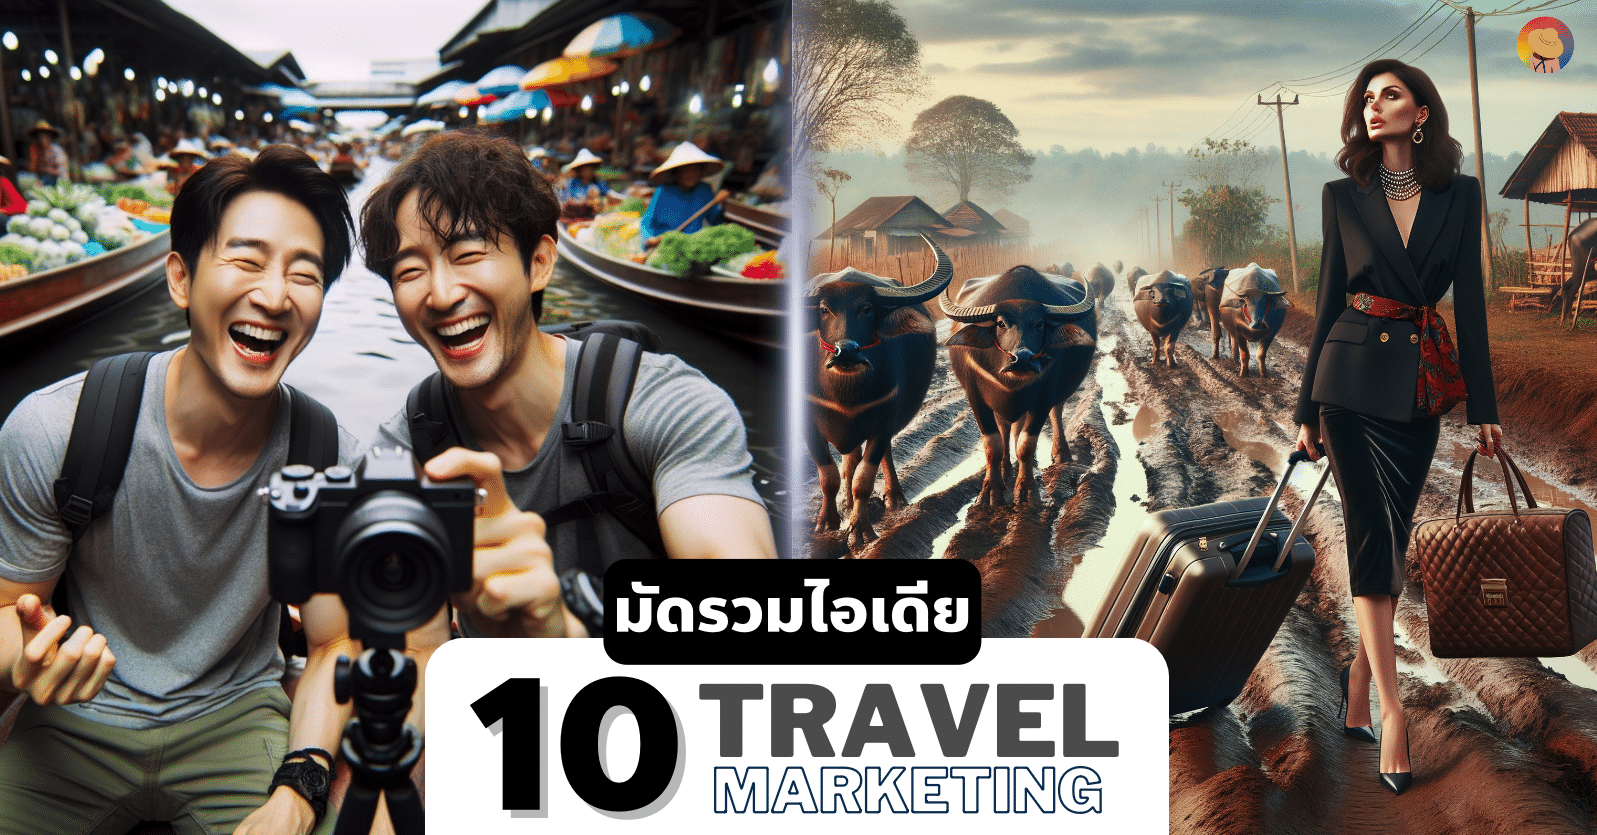 มัดรวม 10 ไอเดีย Travel Marketing ที่นักการตลาดต้องลอง